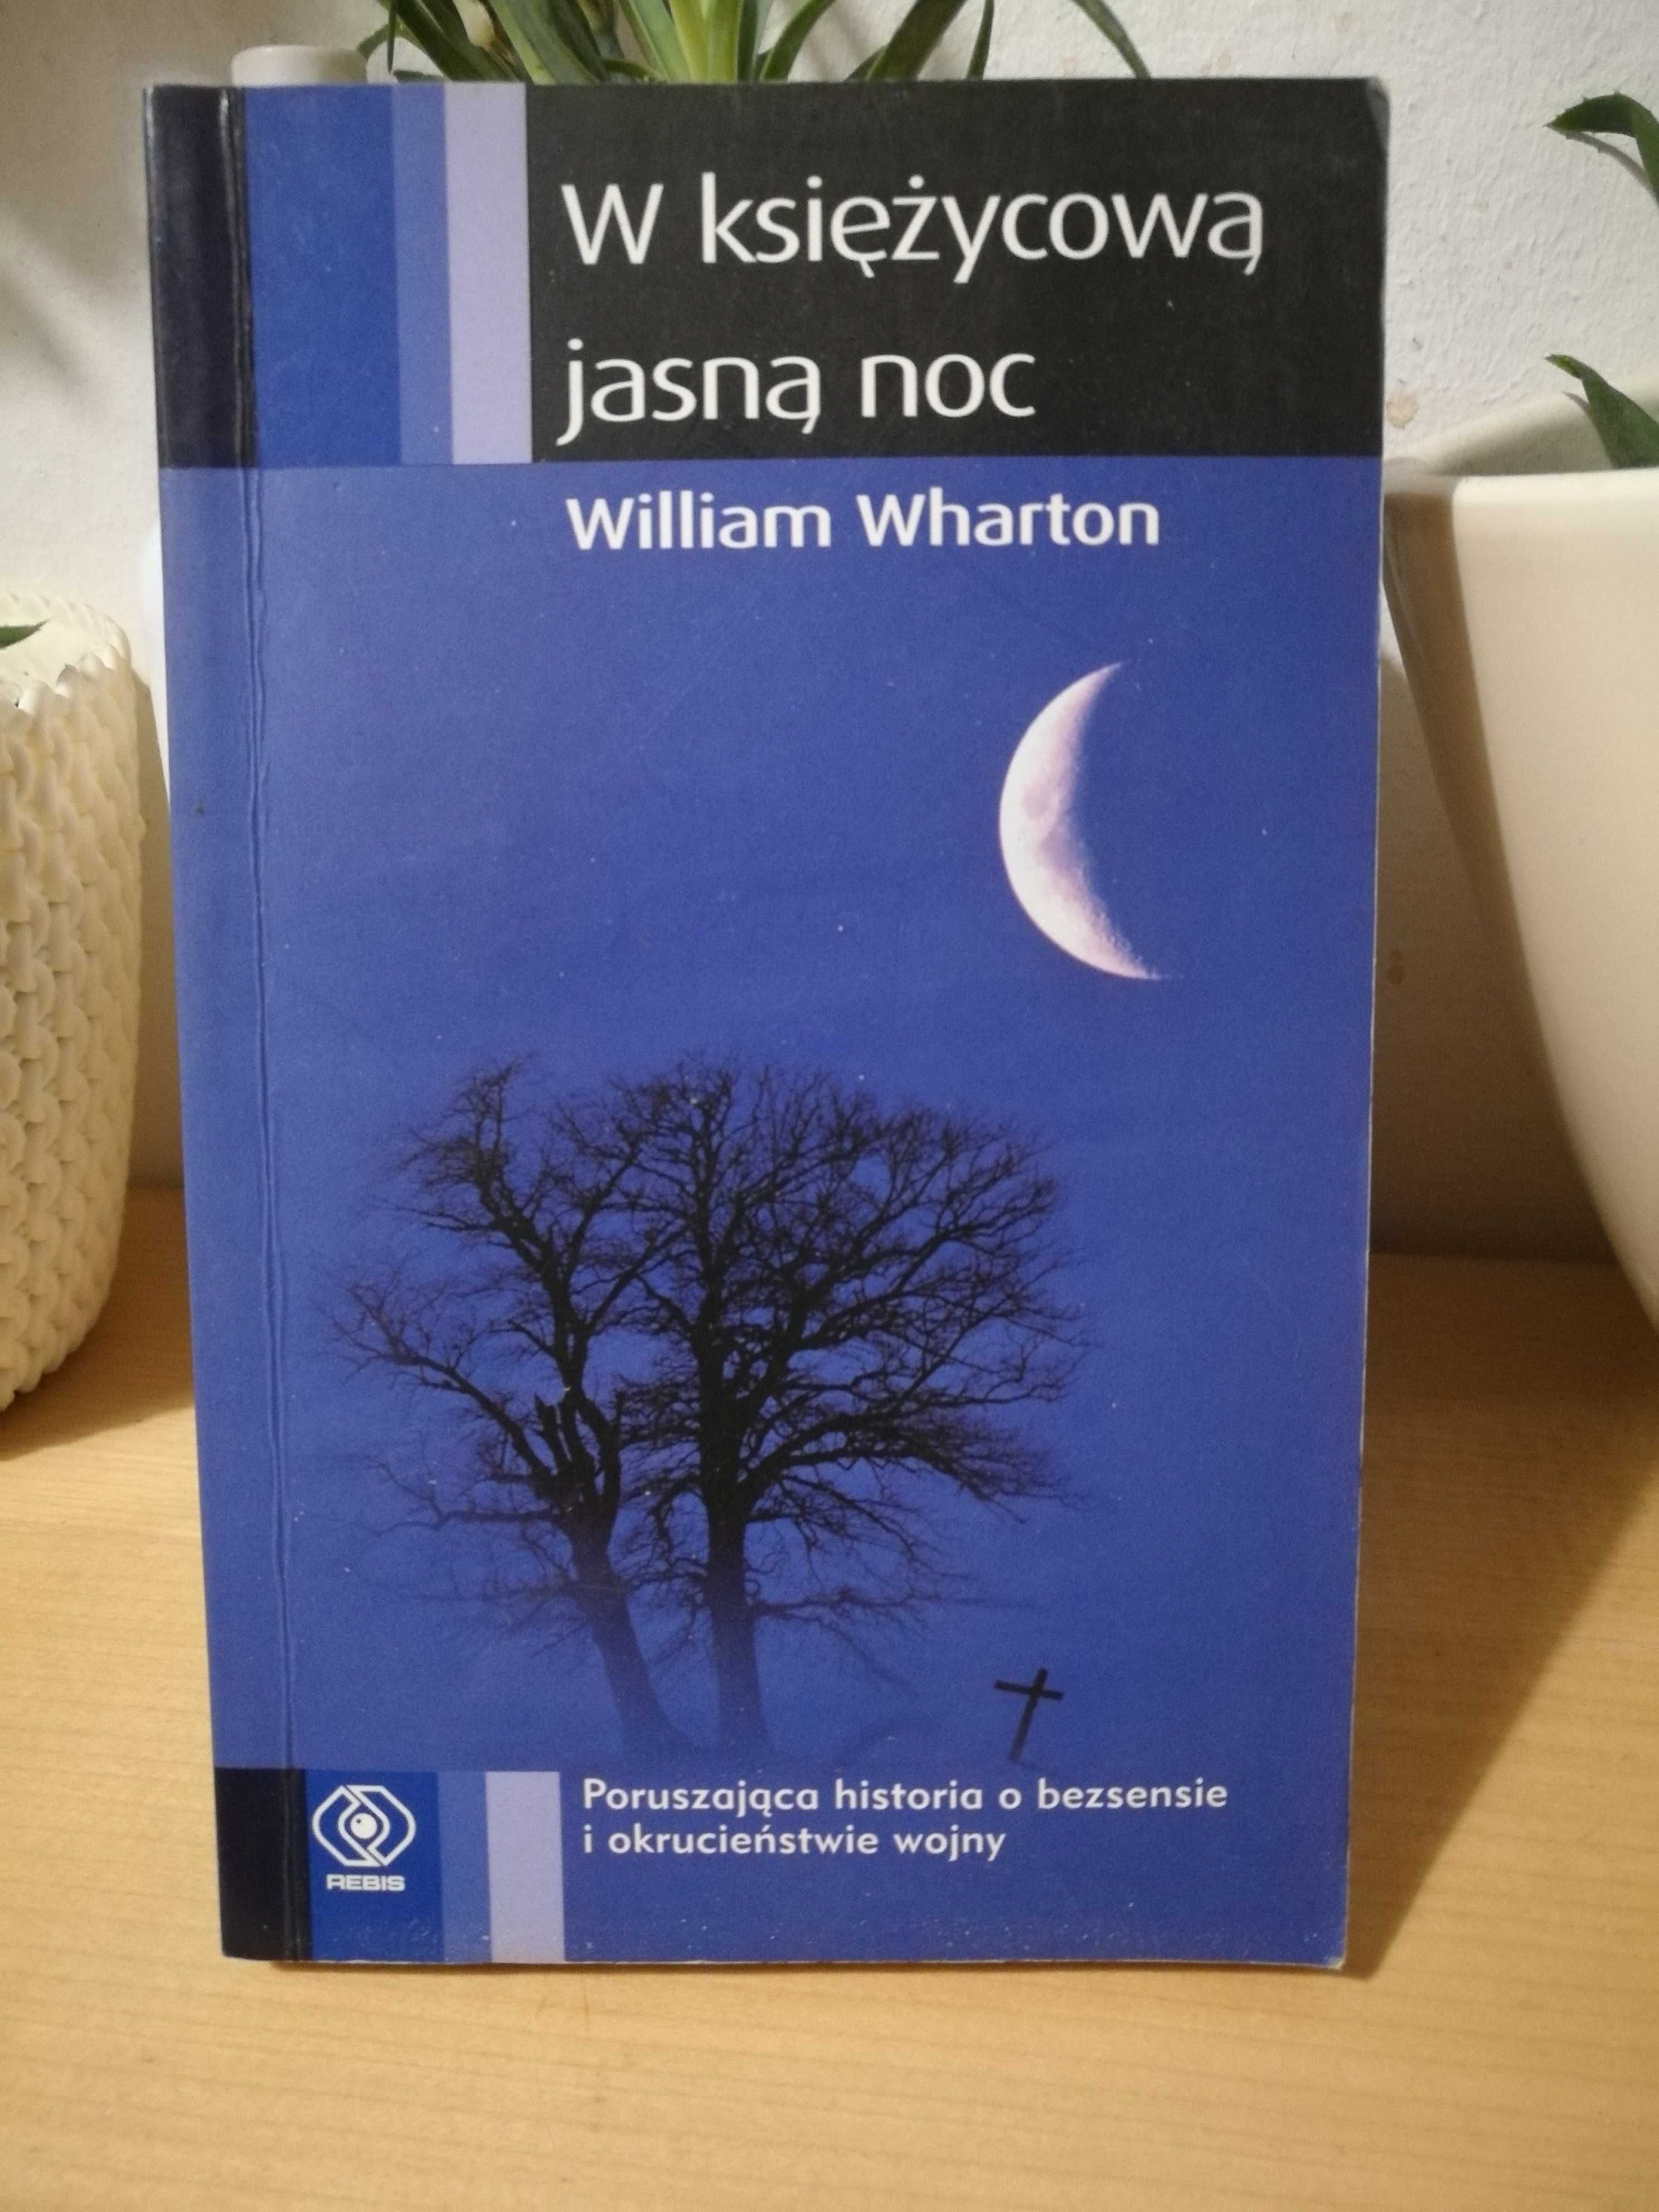 William Wharton "W księżycową, jasną noc"